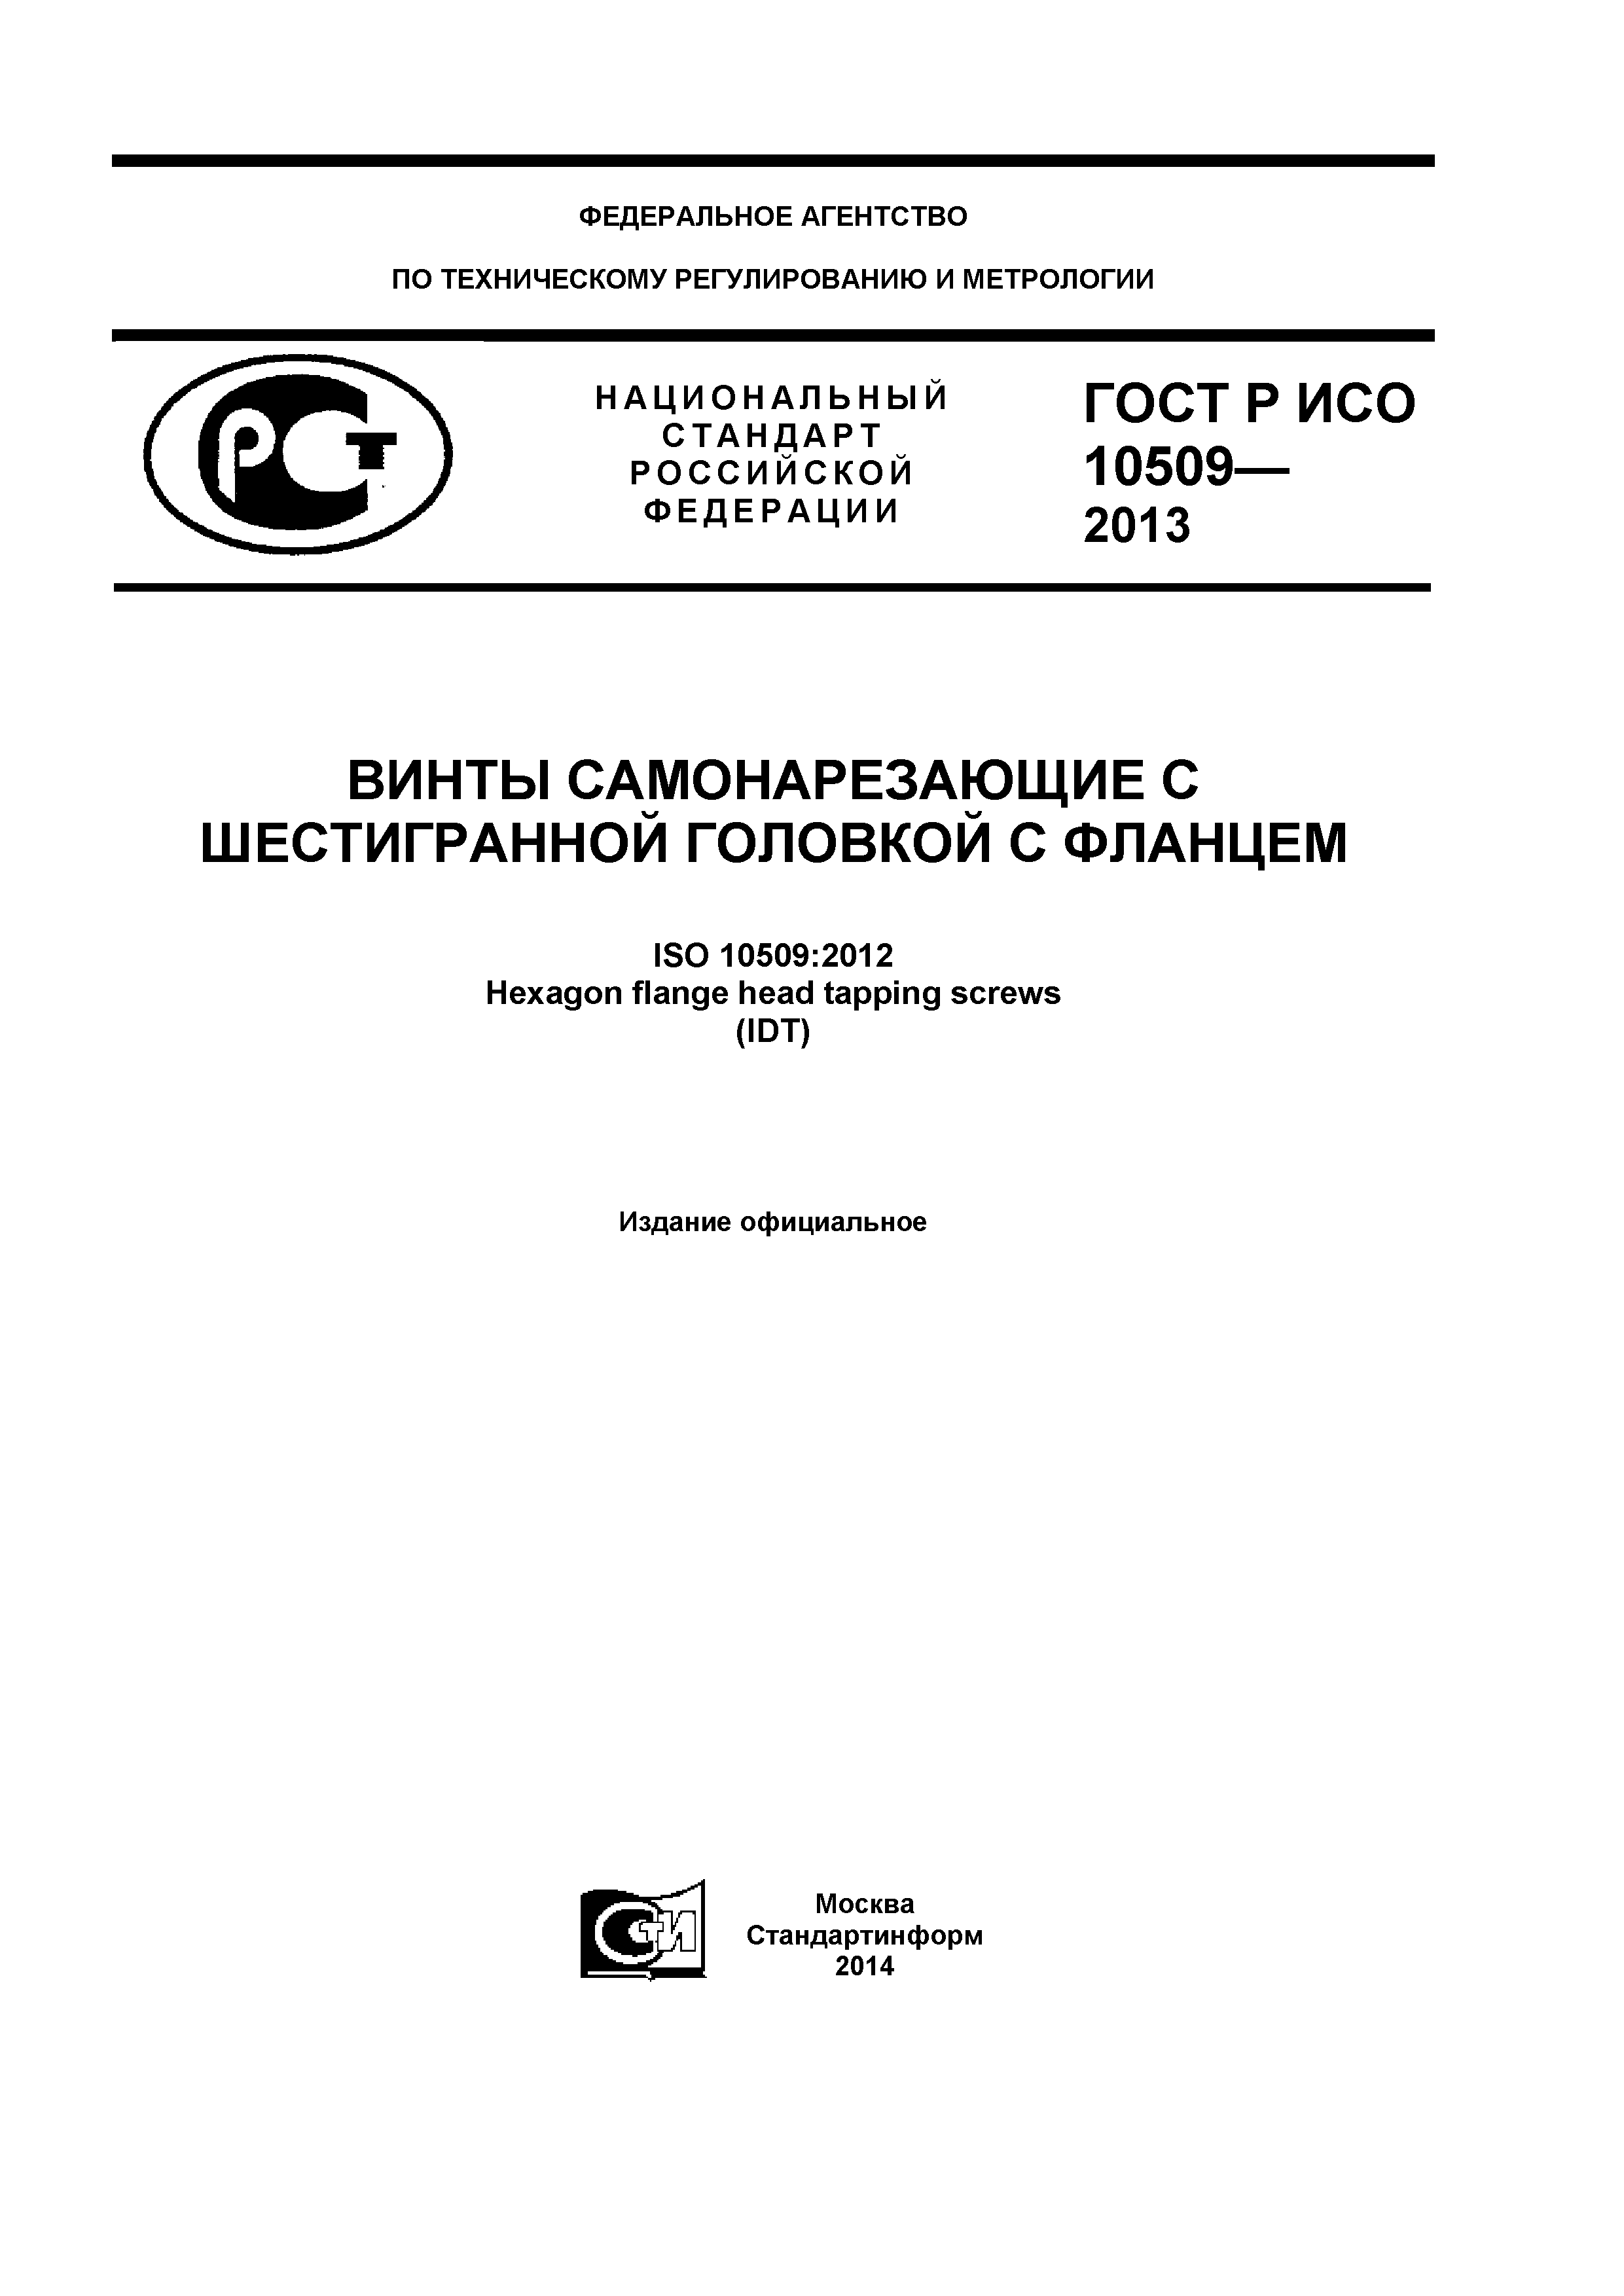 ГОСТ Р ИСО 10509-2013